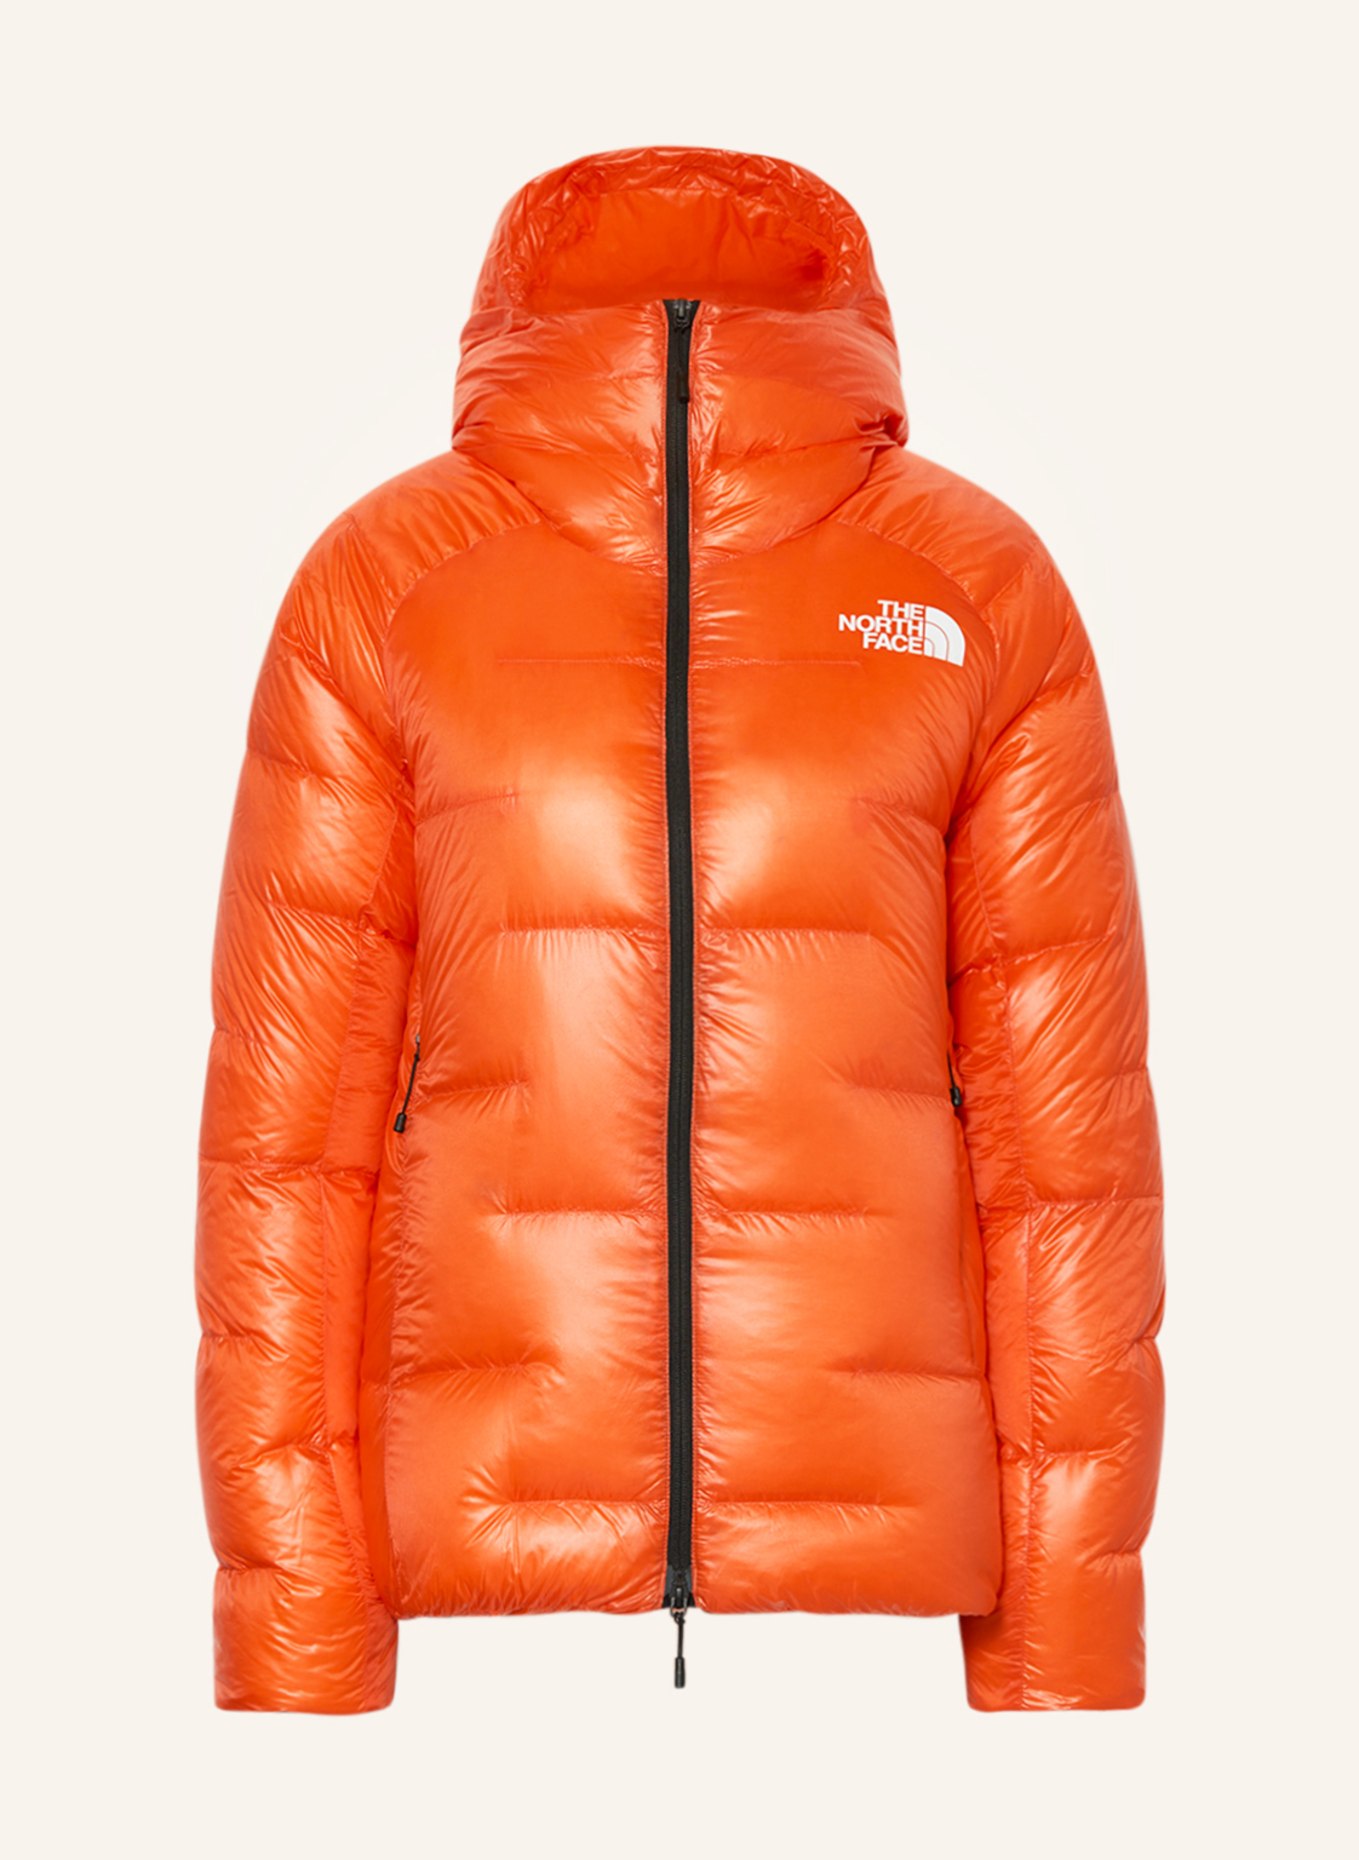 THE NORTH FACE Lightweight down jacket SUMMIT PUMORI in orange